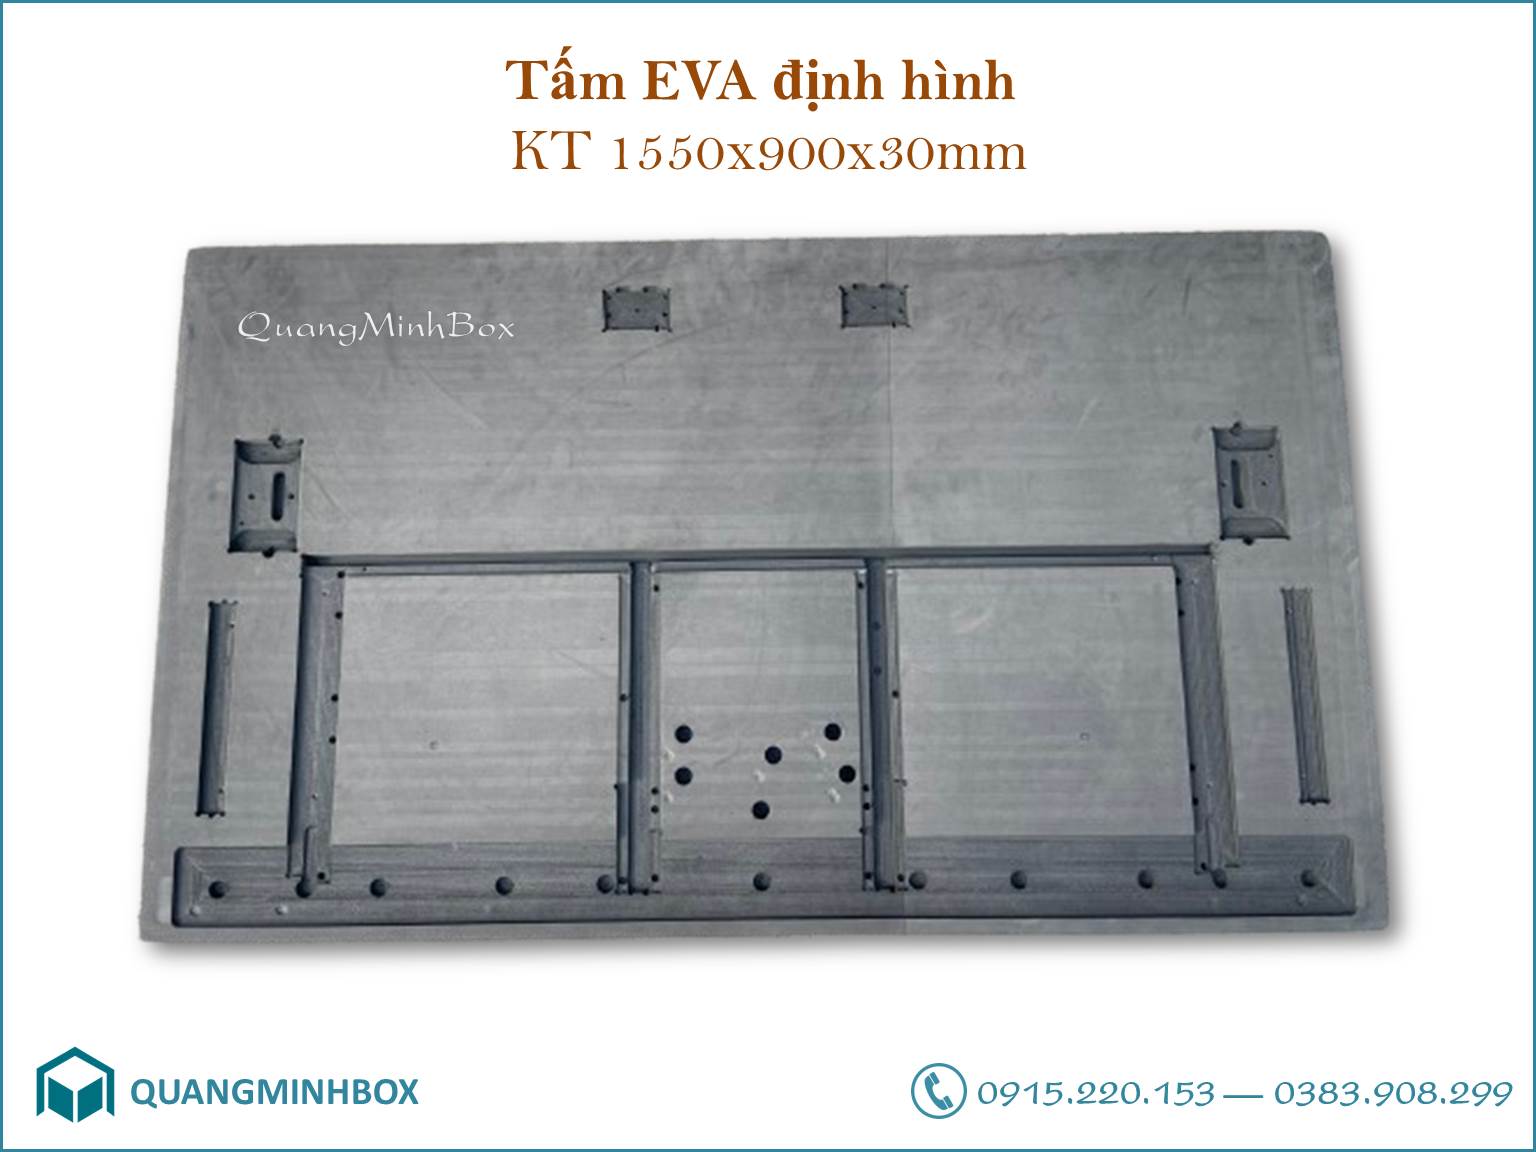 Tấm EVA định hình KT 1550x900x30mm